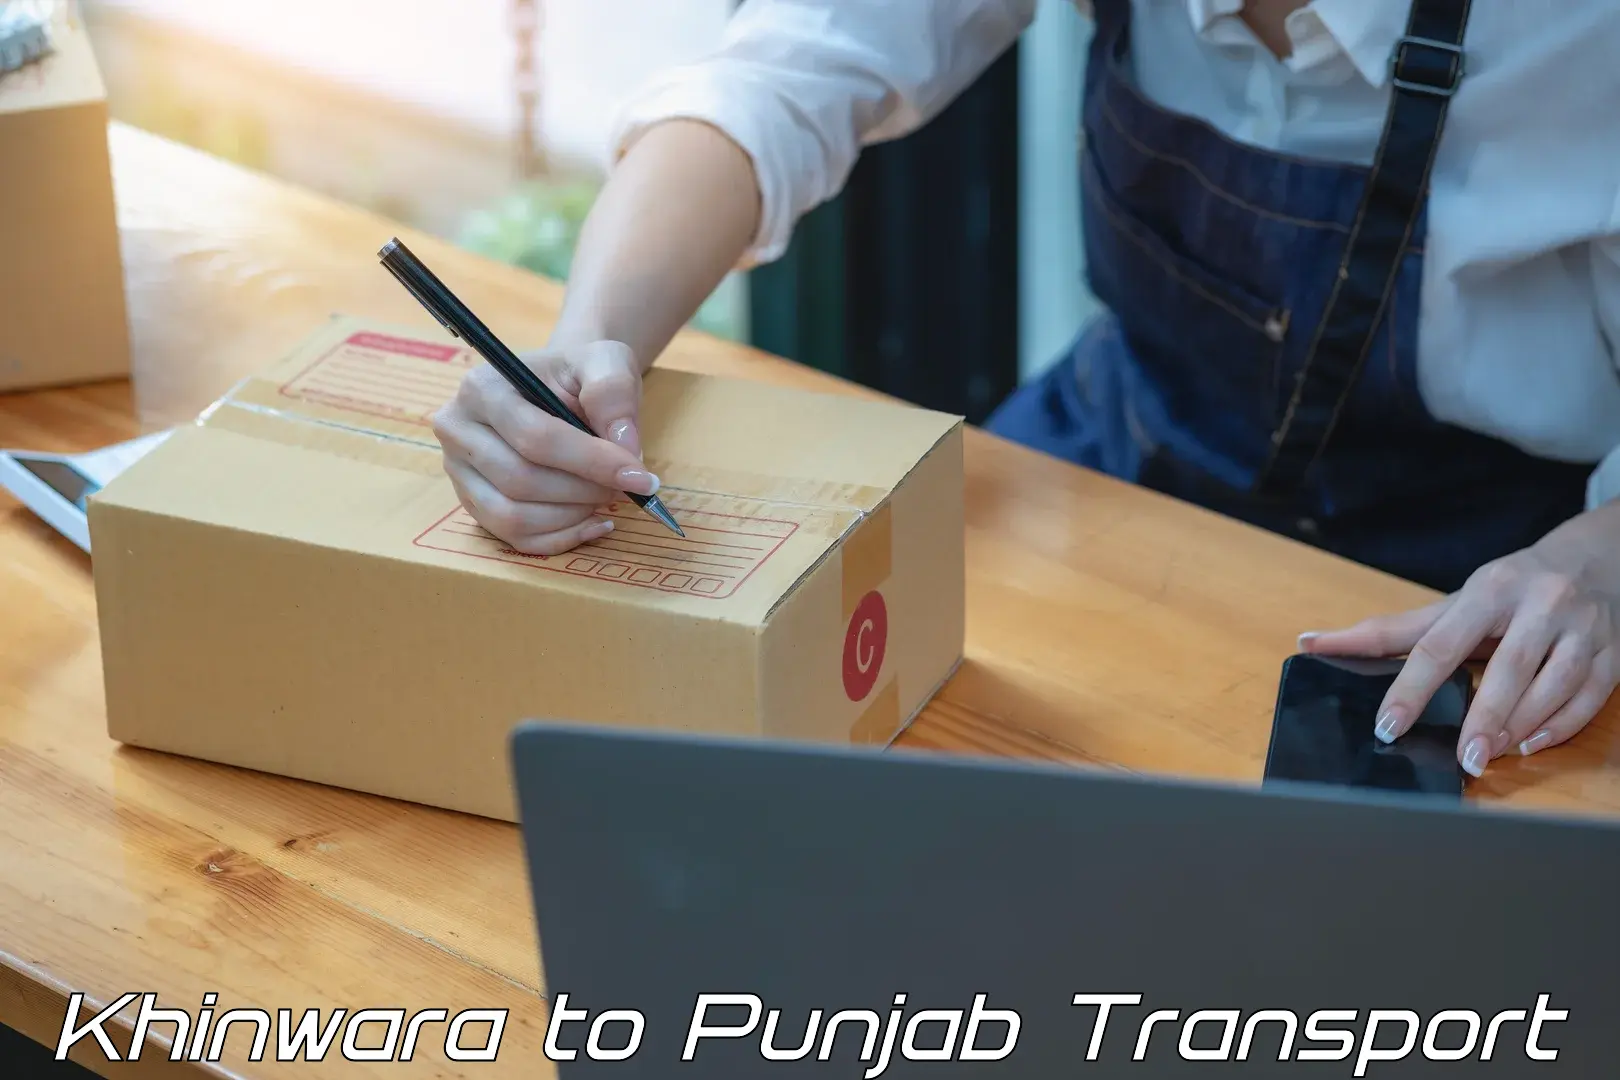 Furniture transport service Khinwara to Punjab